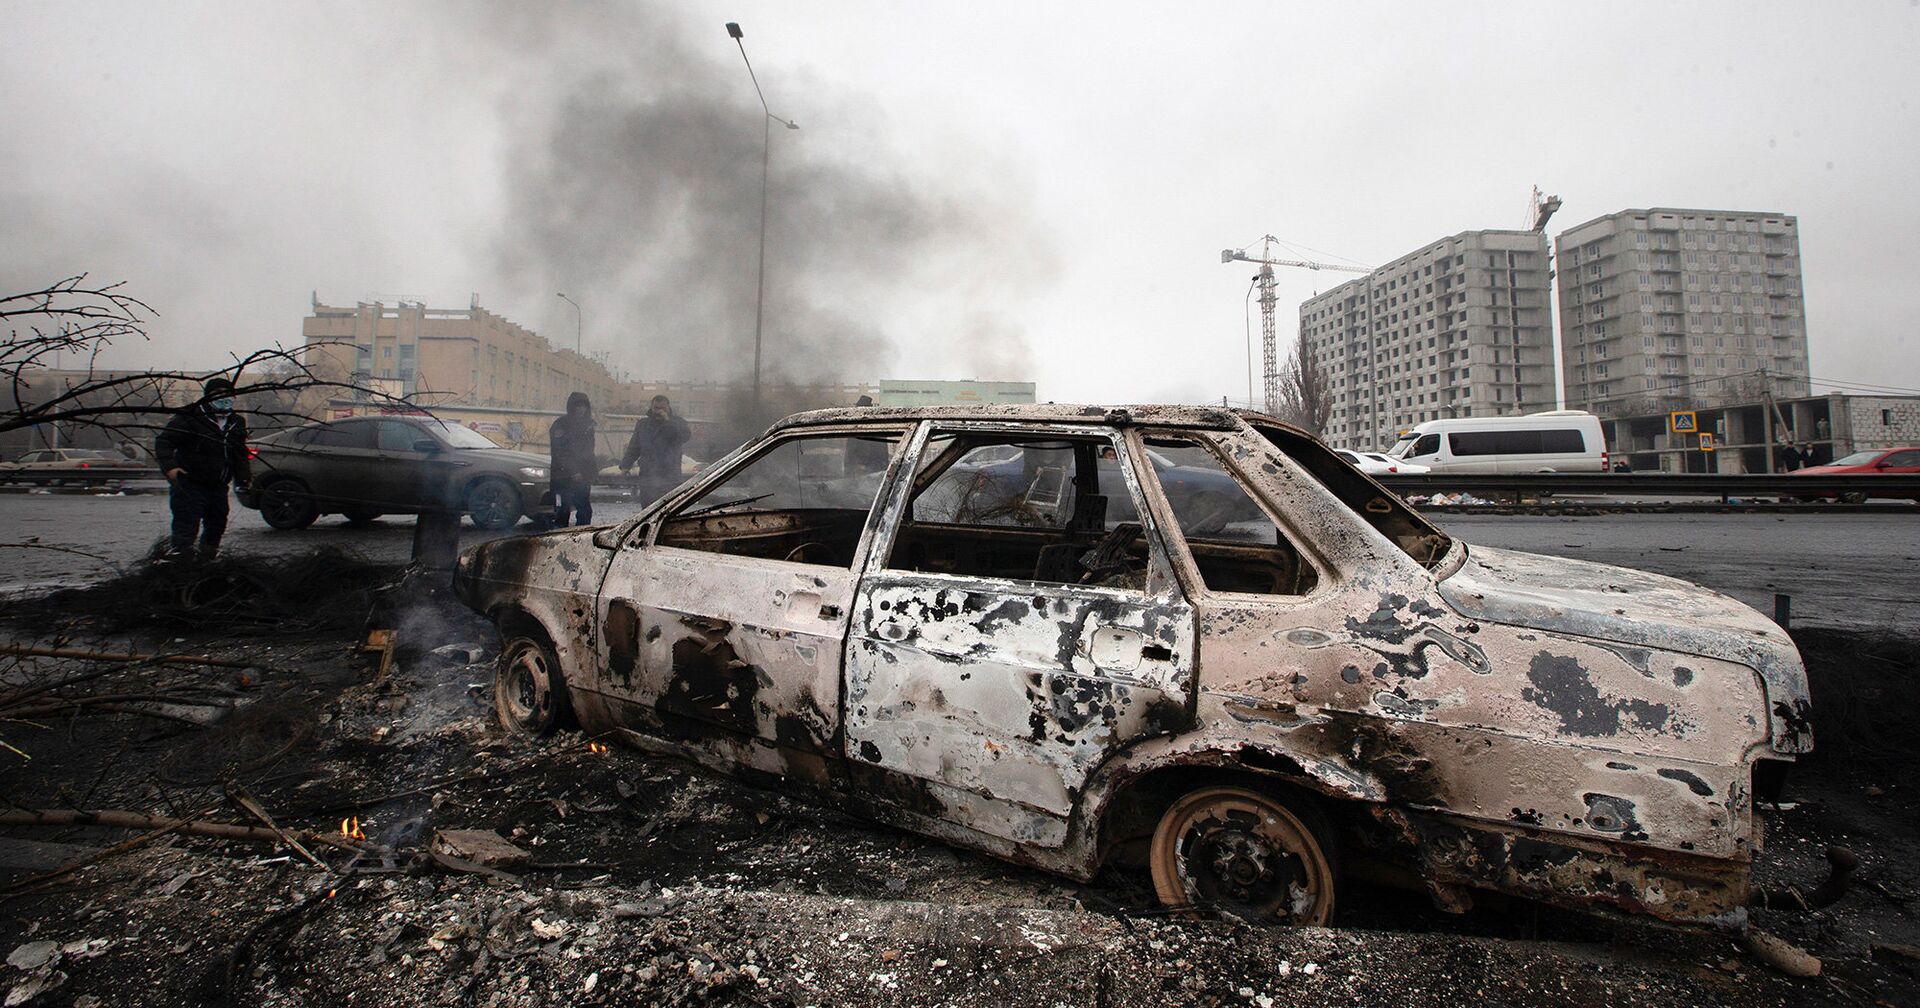 Сгоревший автомобиль на улице Алма-Аты, Казахстан - ИноСМИ, 1920, 07.01.2022